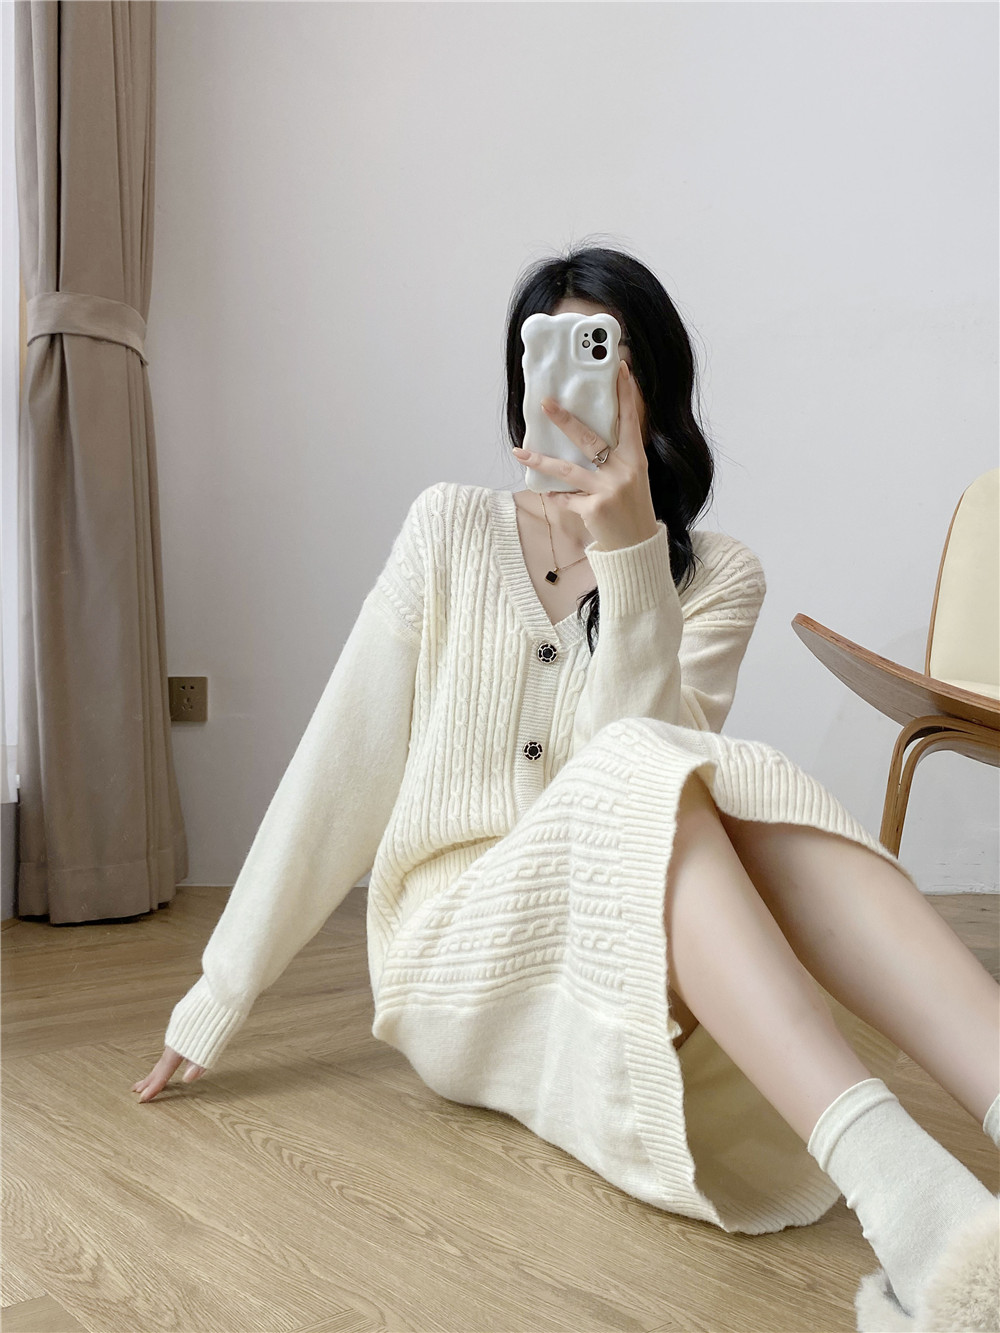 Long pocket dress wears outside knitted sweater dress